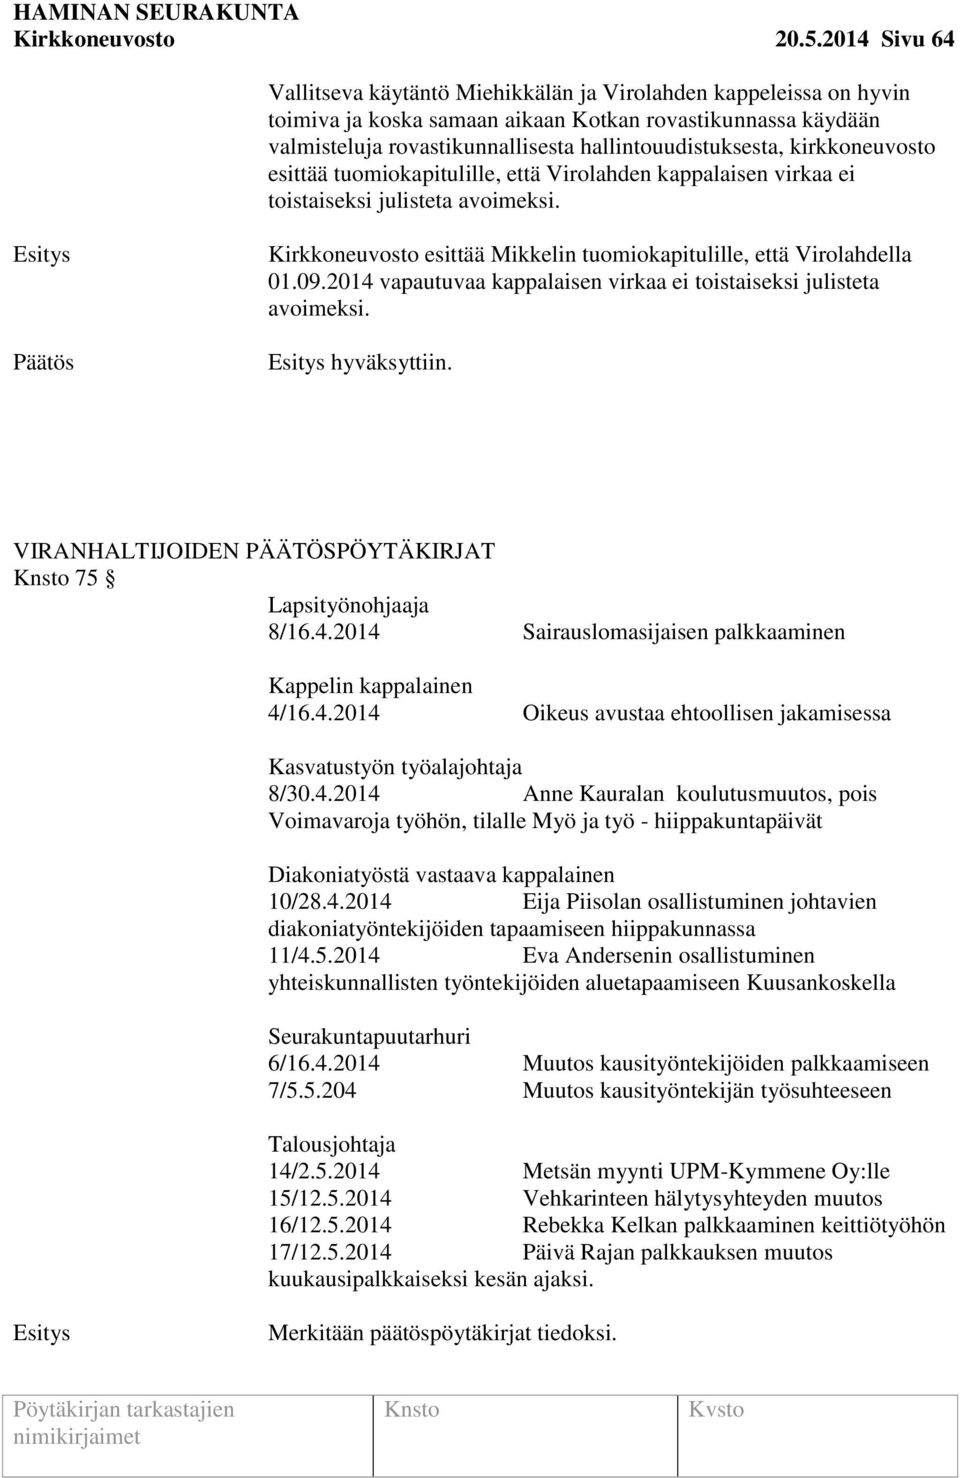 kirkkoneuvosto esittää tuomiokapitulille, että Virolahden kappalaisen virkaa ei toistaiseksi julisteta avoimeksi. Kirkkoneuvosto esittää Mikkelin tuomiokapitulille, että Virolahdella 01.09.